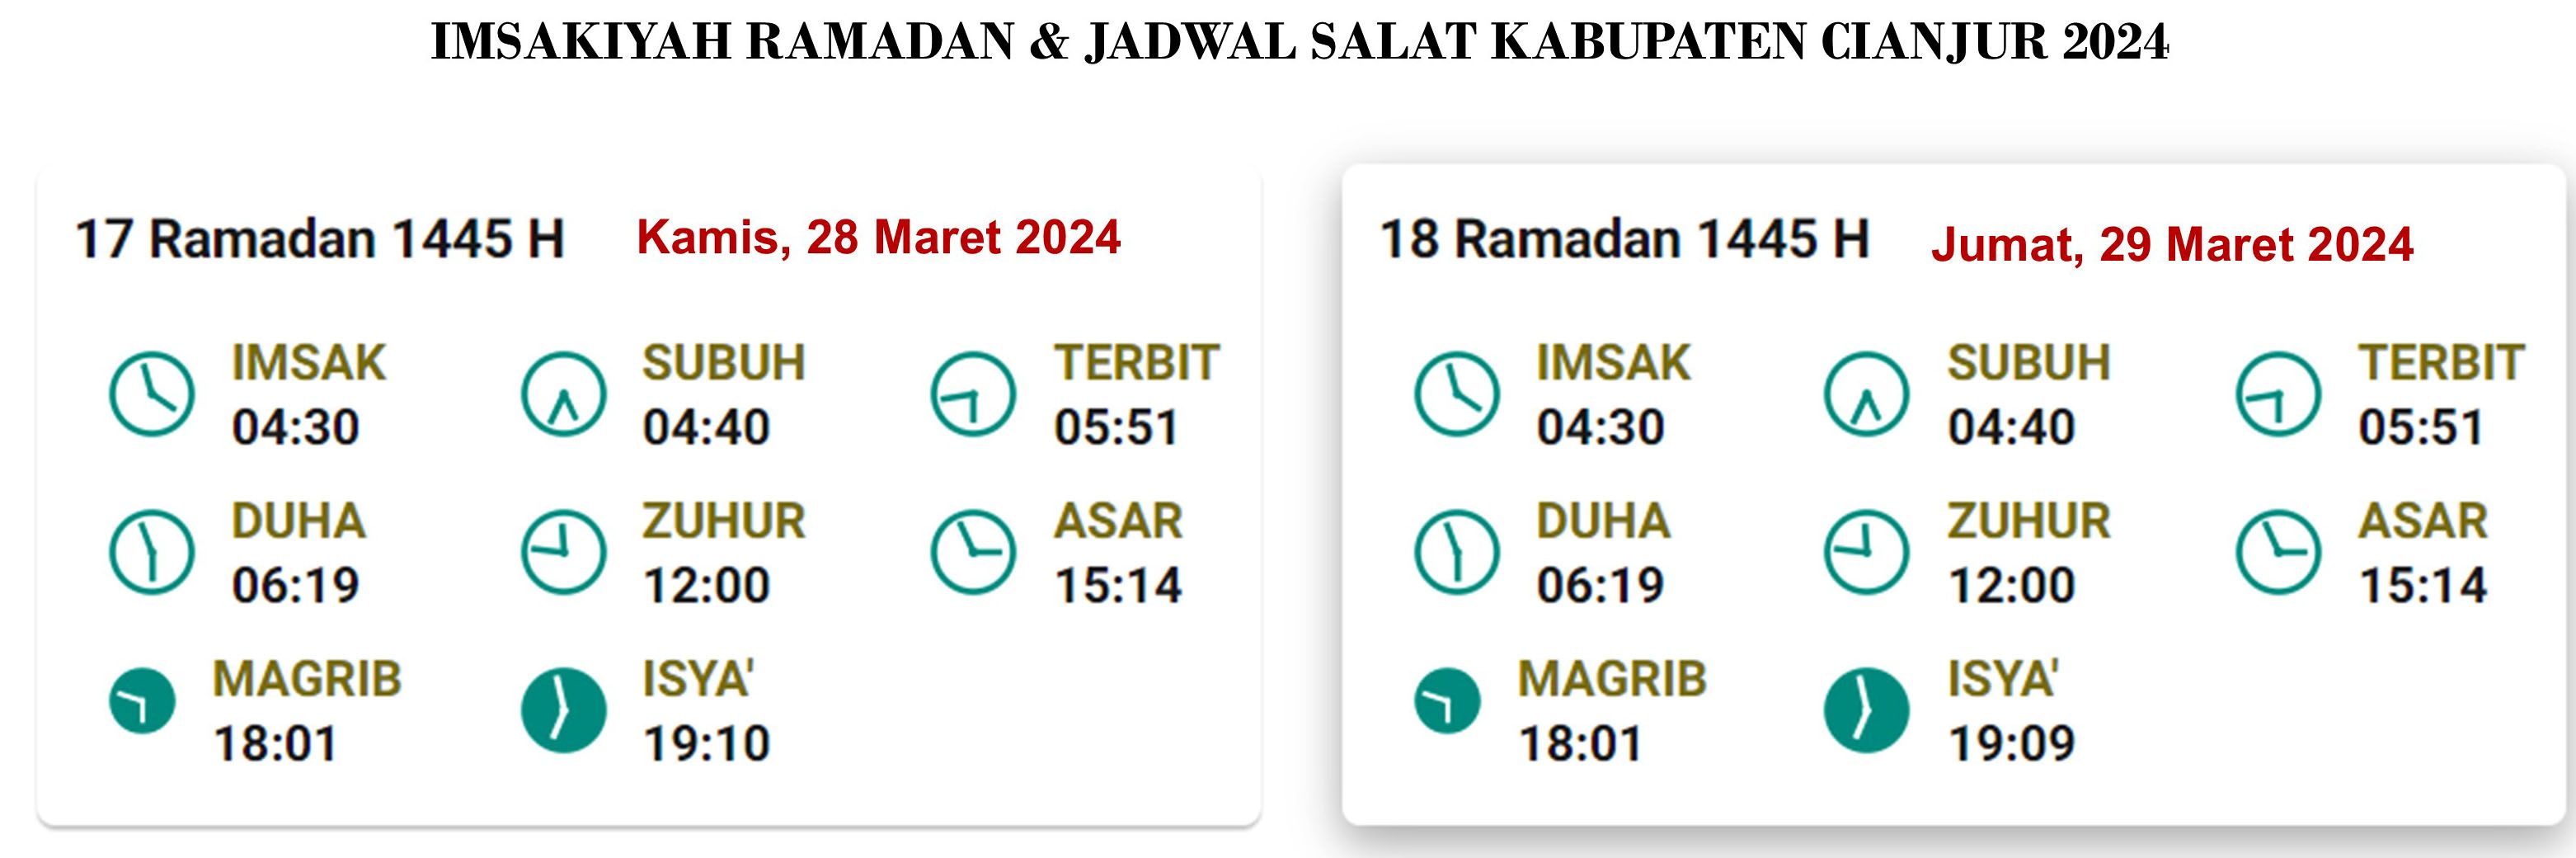 Cianjur, Jadwal Imsakiyah dan Salat, Jumat, 29 Maret 2024